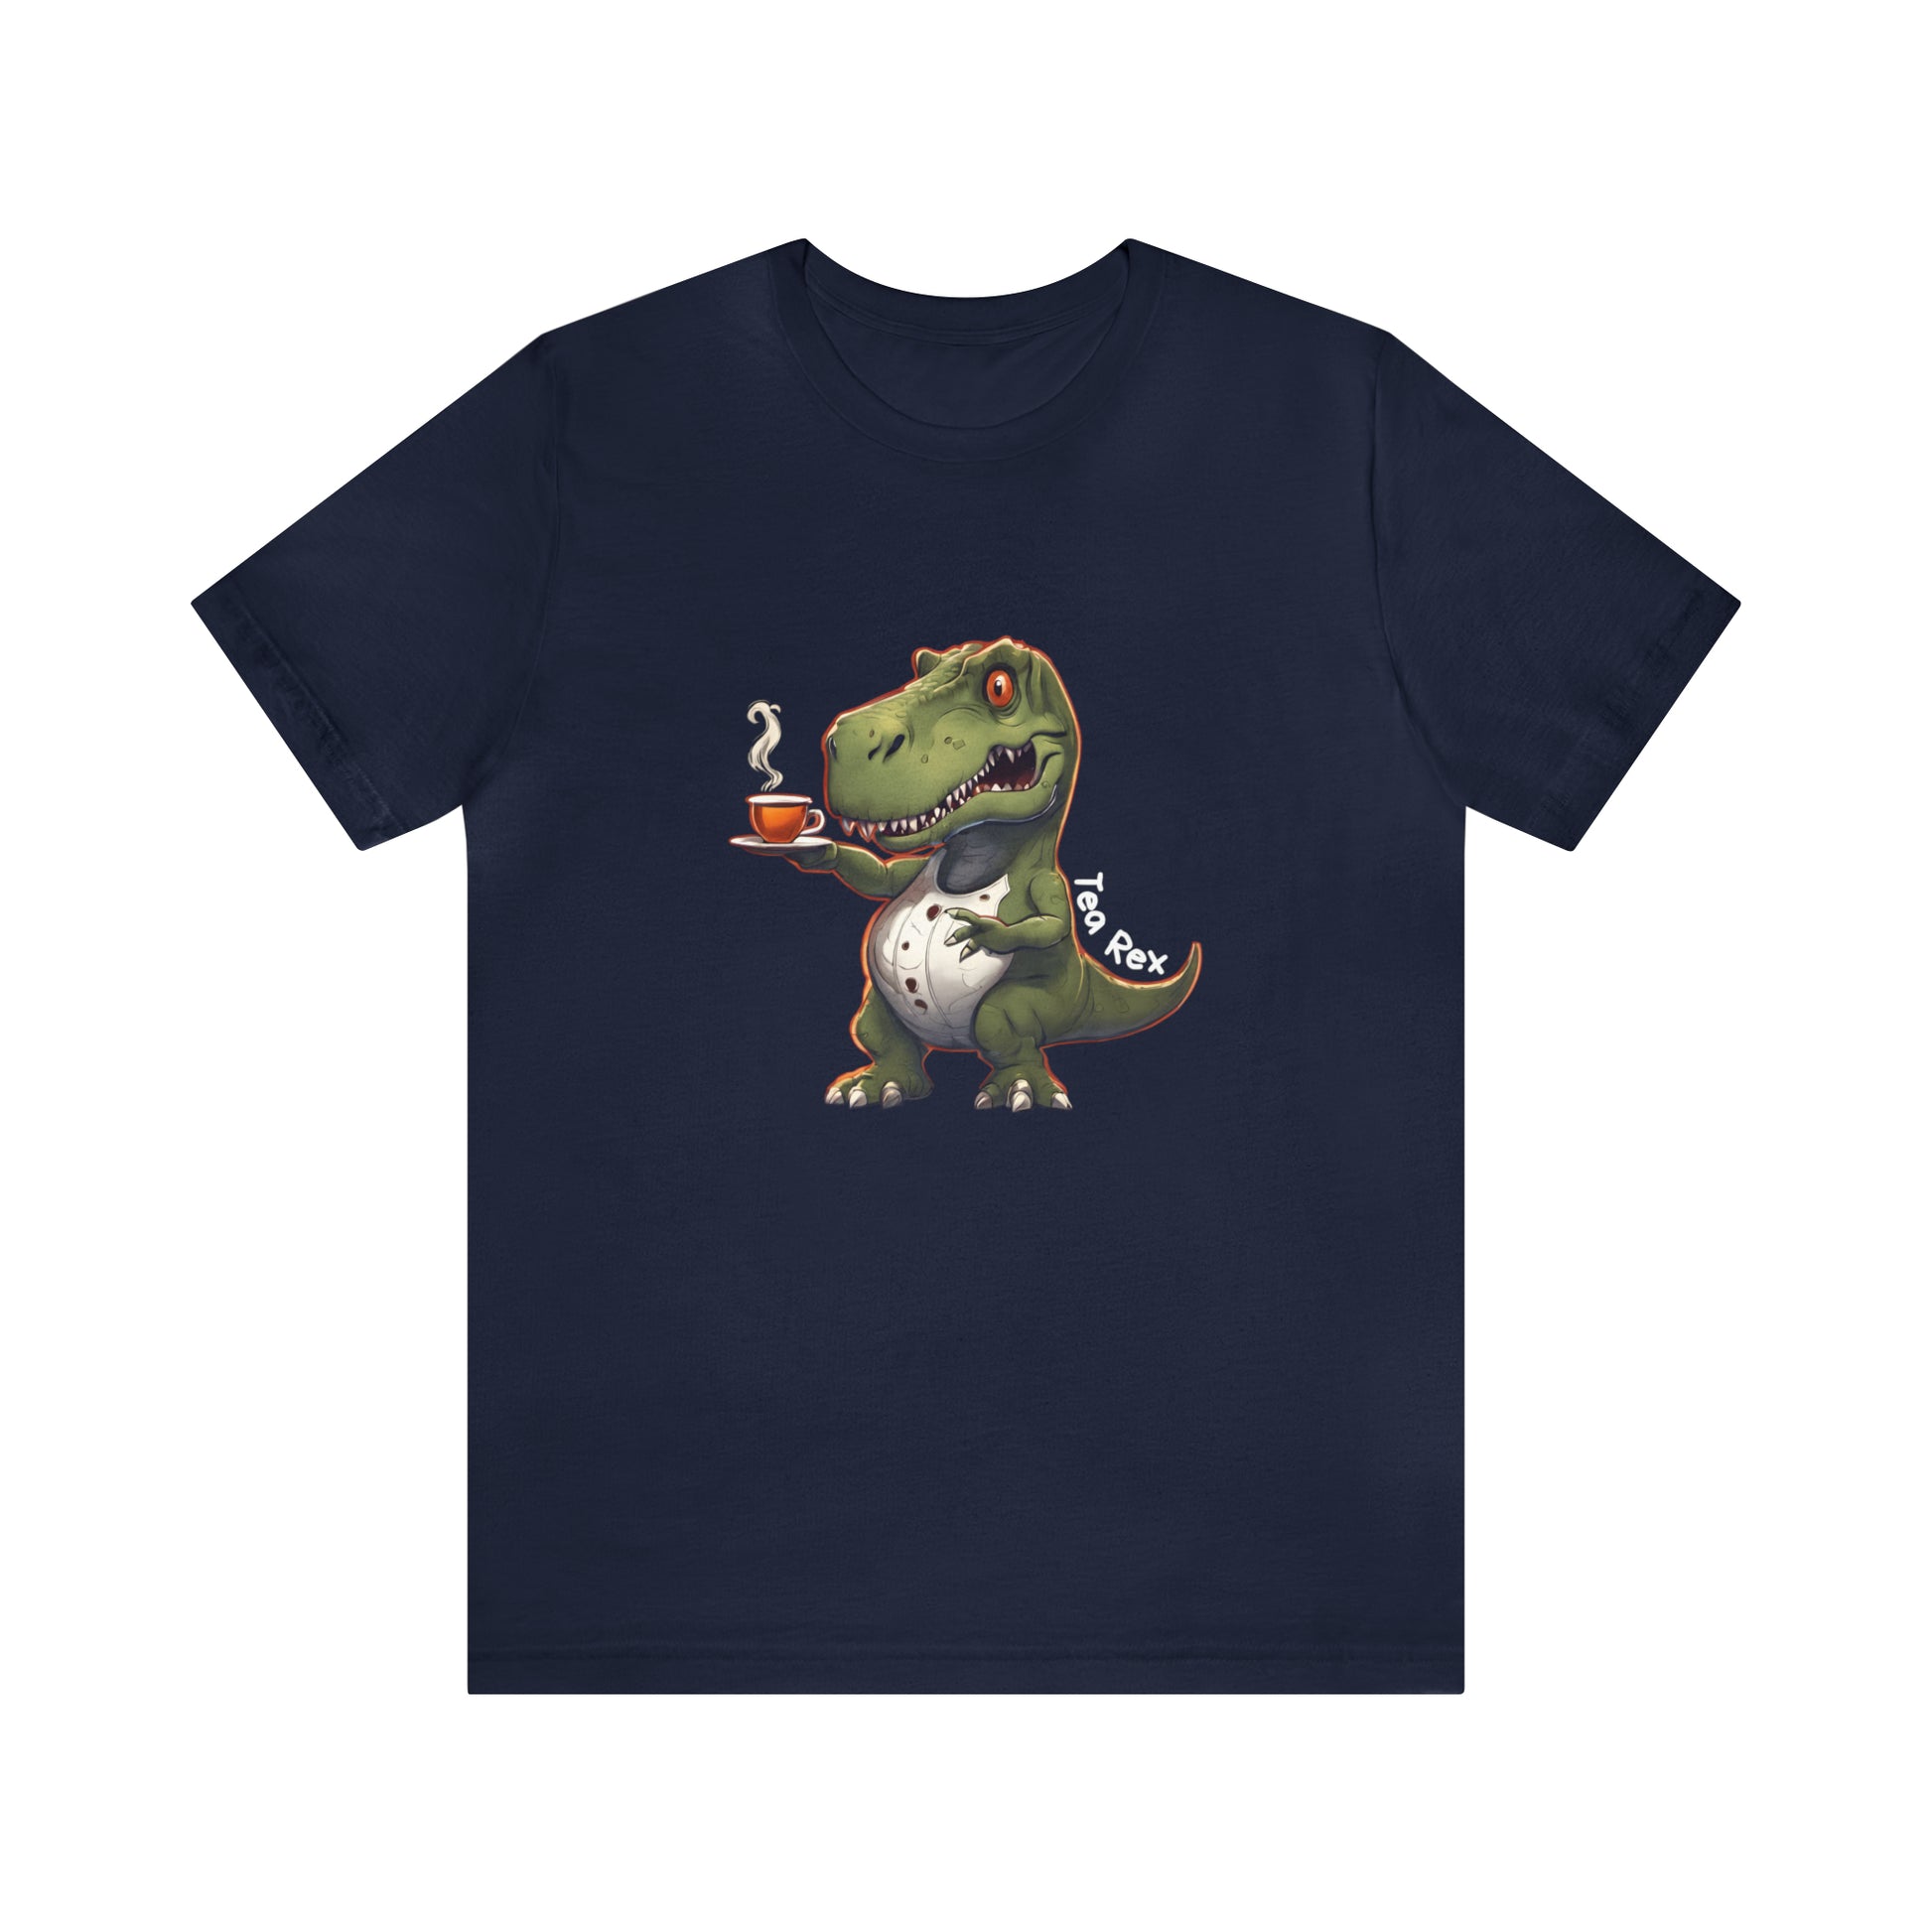 Tea Rex & T-rex dinosaur Unisex short sleeve T-Shirt with Ultra soft-cotton Blue